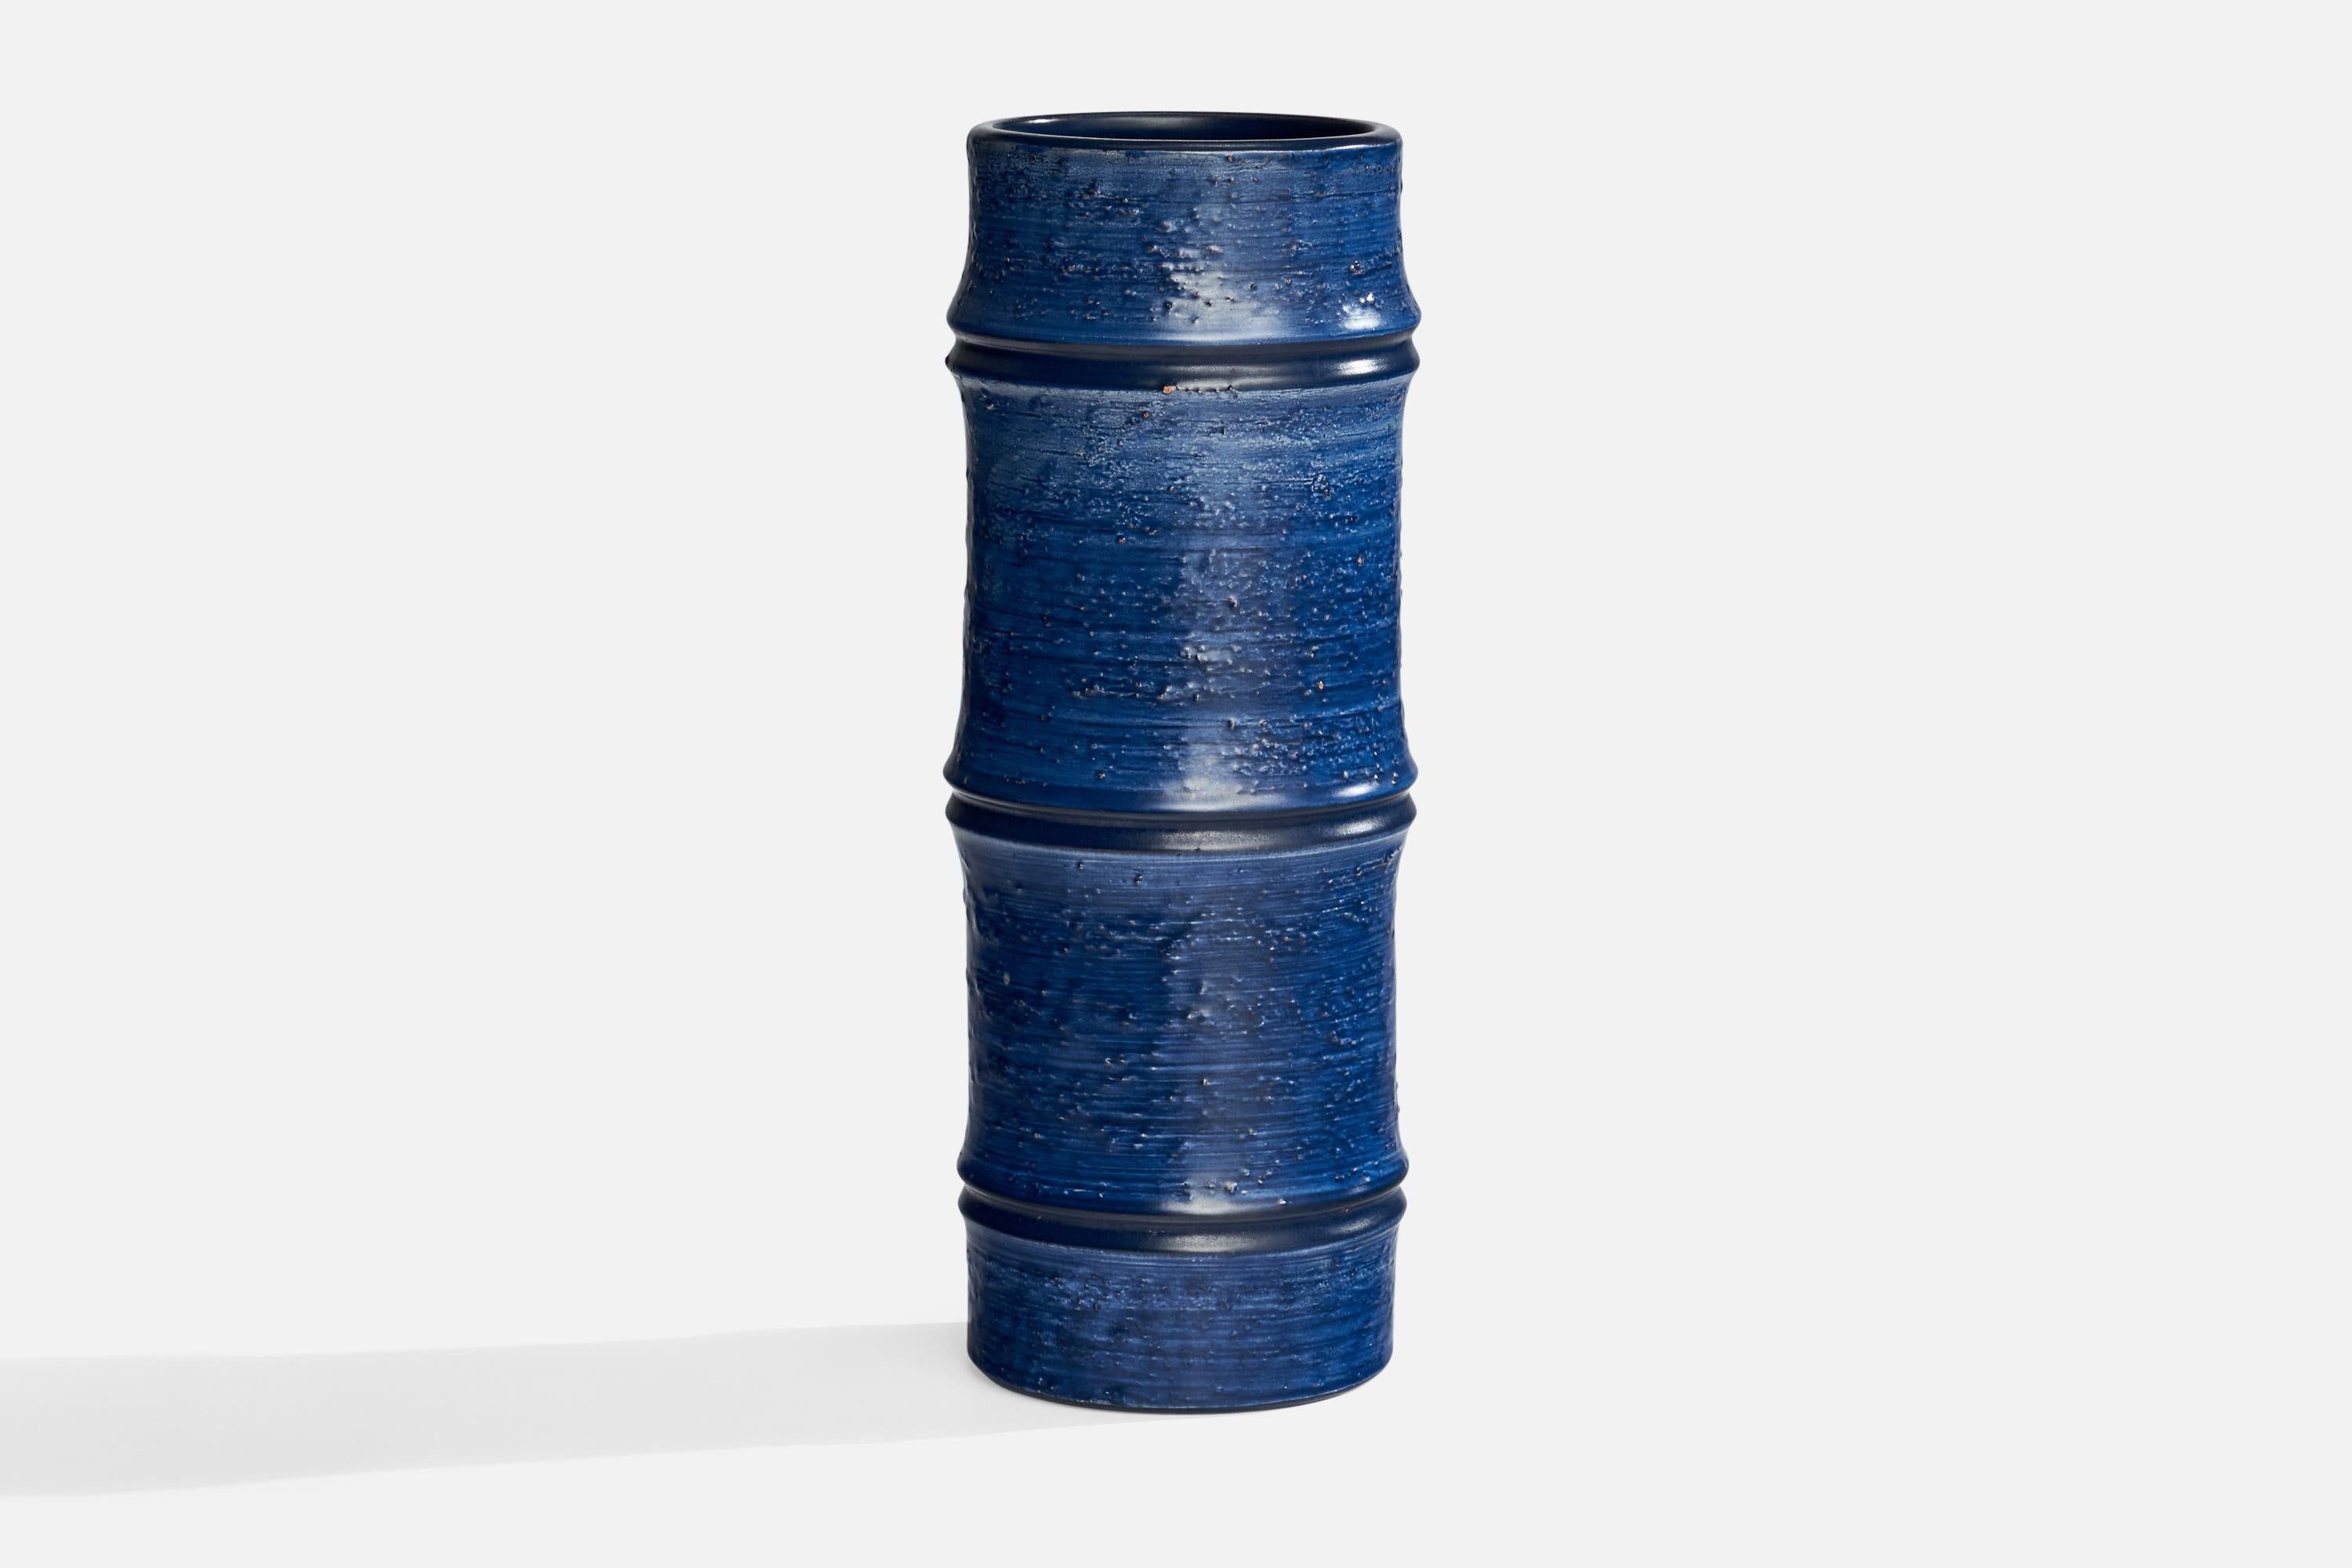 A blue-glazed ceramic vase designed by Jerk Werkmäster and produced by Nittsjö, Sweden, c. 1930s.